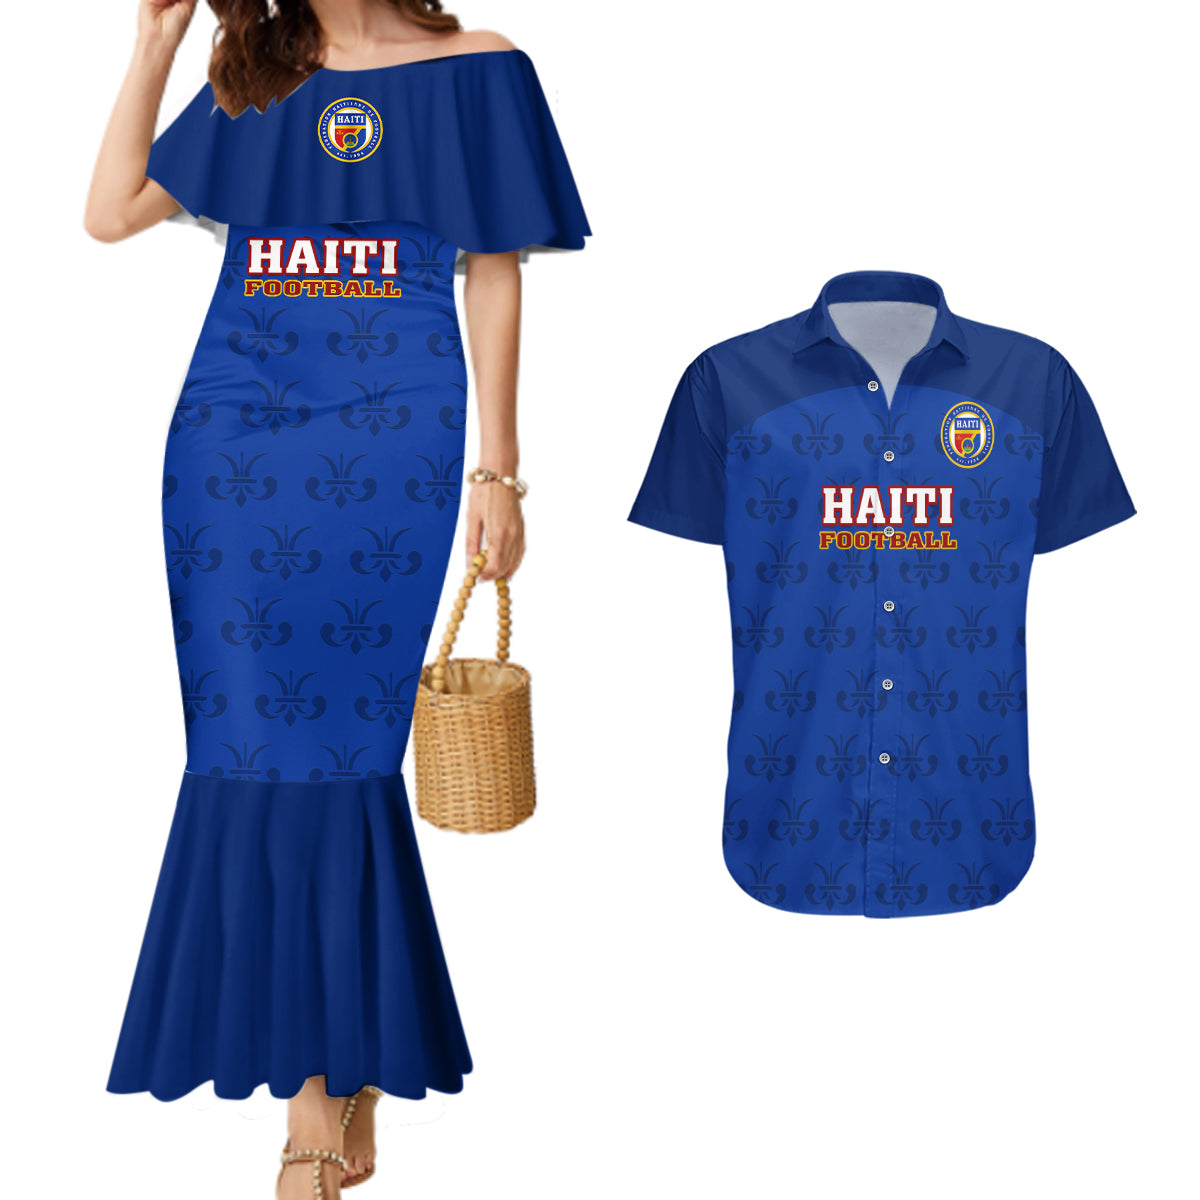 haiti-football-couples-matching-mermaid-dress-and-hawaiian-shirt-les-grenadieres-2023-world-cup-blue-version